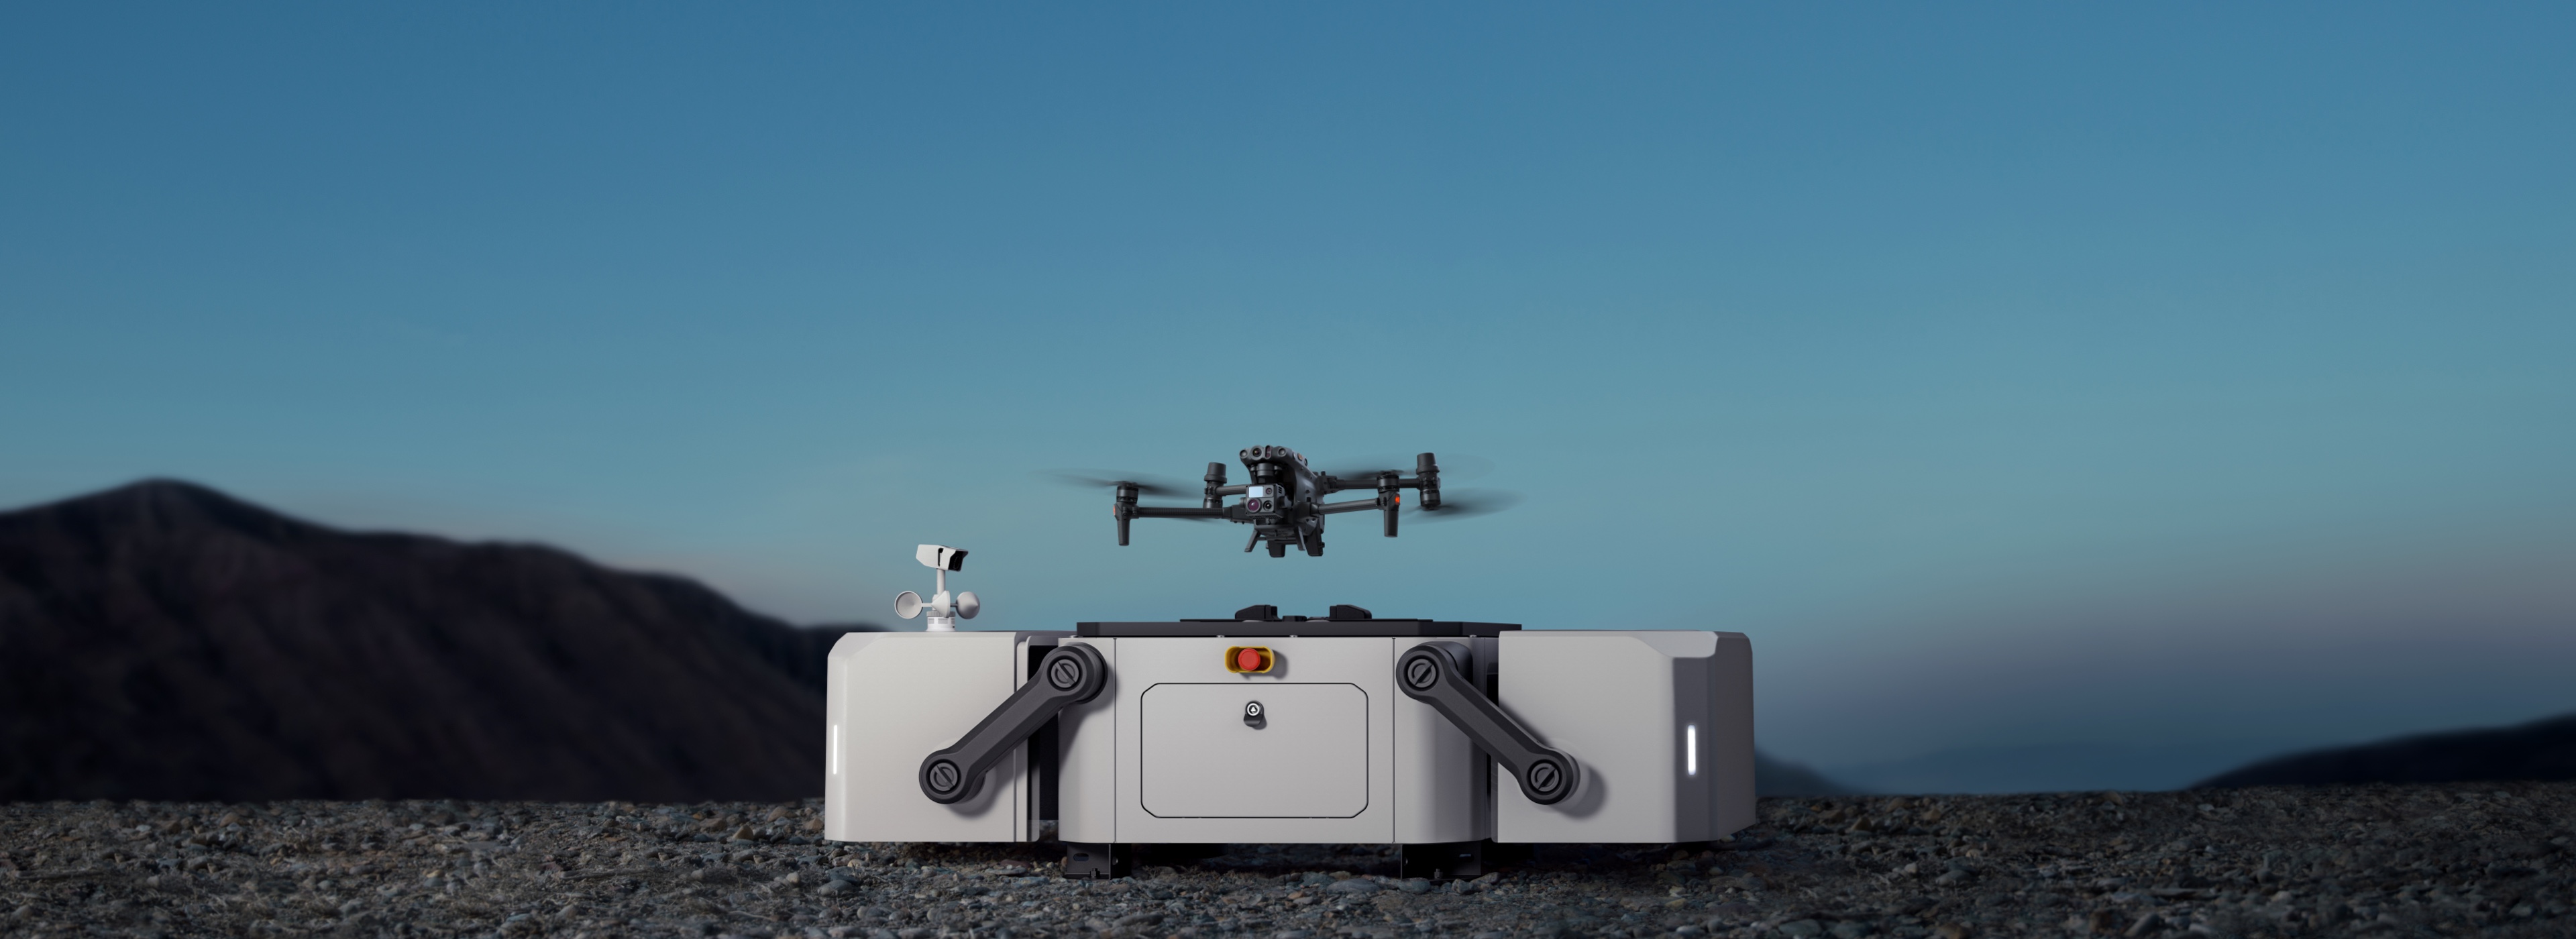 DJI Dock: An in-house DJI drone-in-a-box last